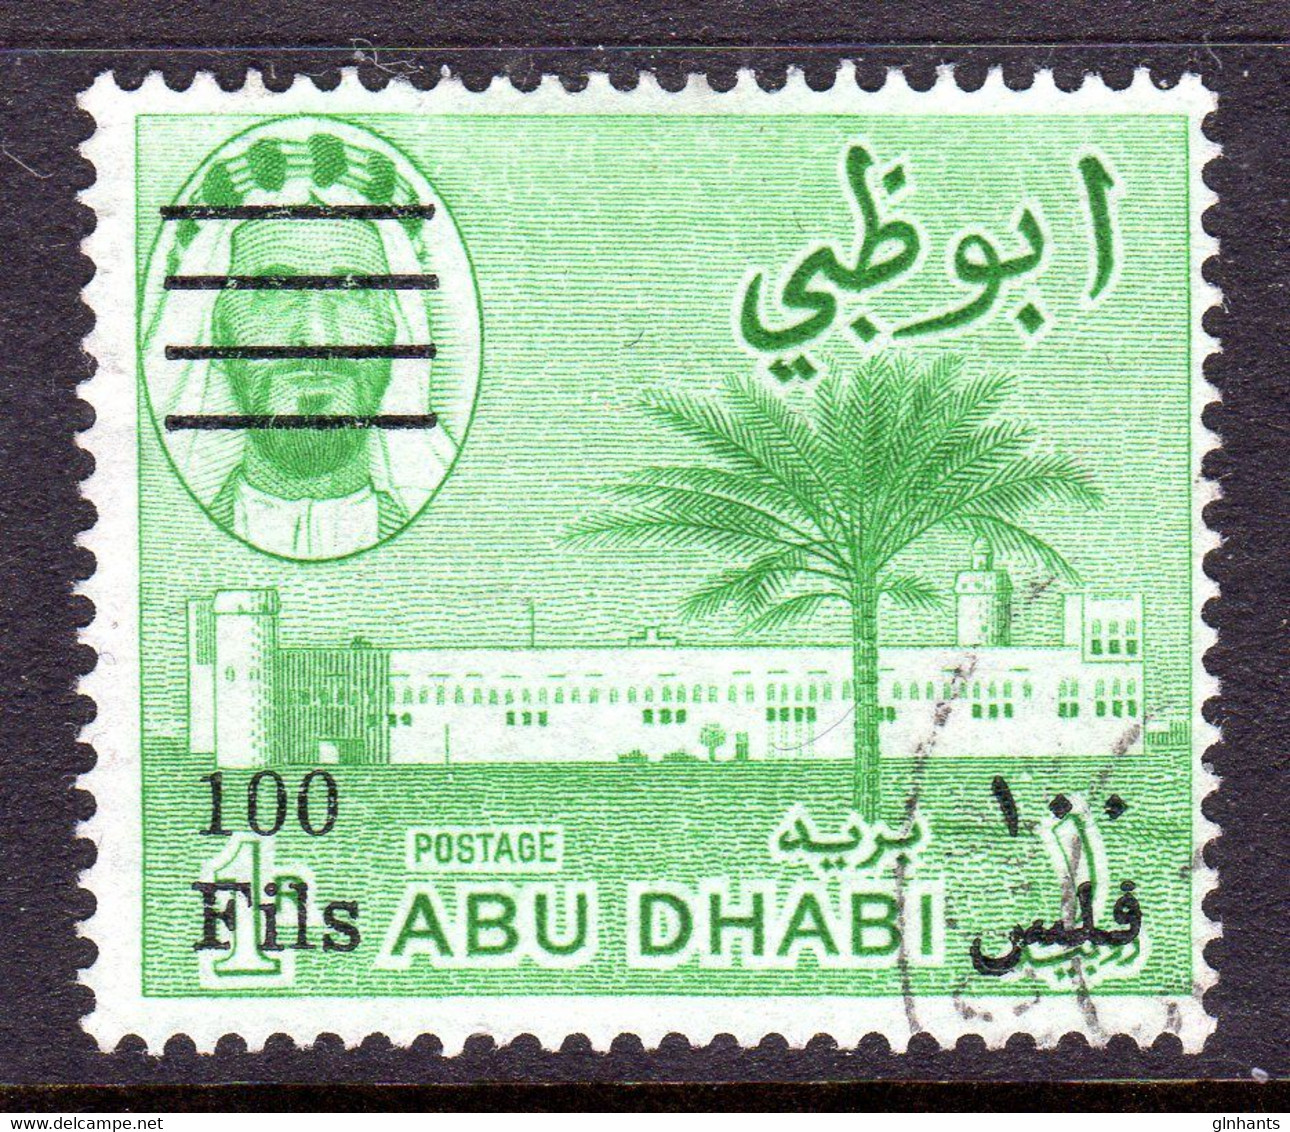 ABU DHABI - 1966 NEW CURRENCY 100F ON 1 RUPEE STAMP FINE USED SG 22 - Abu Dhabi